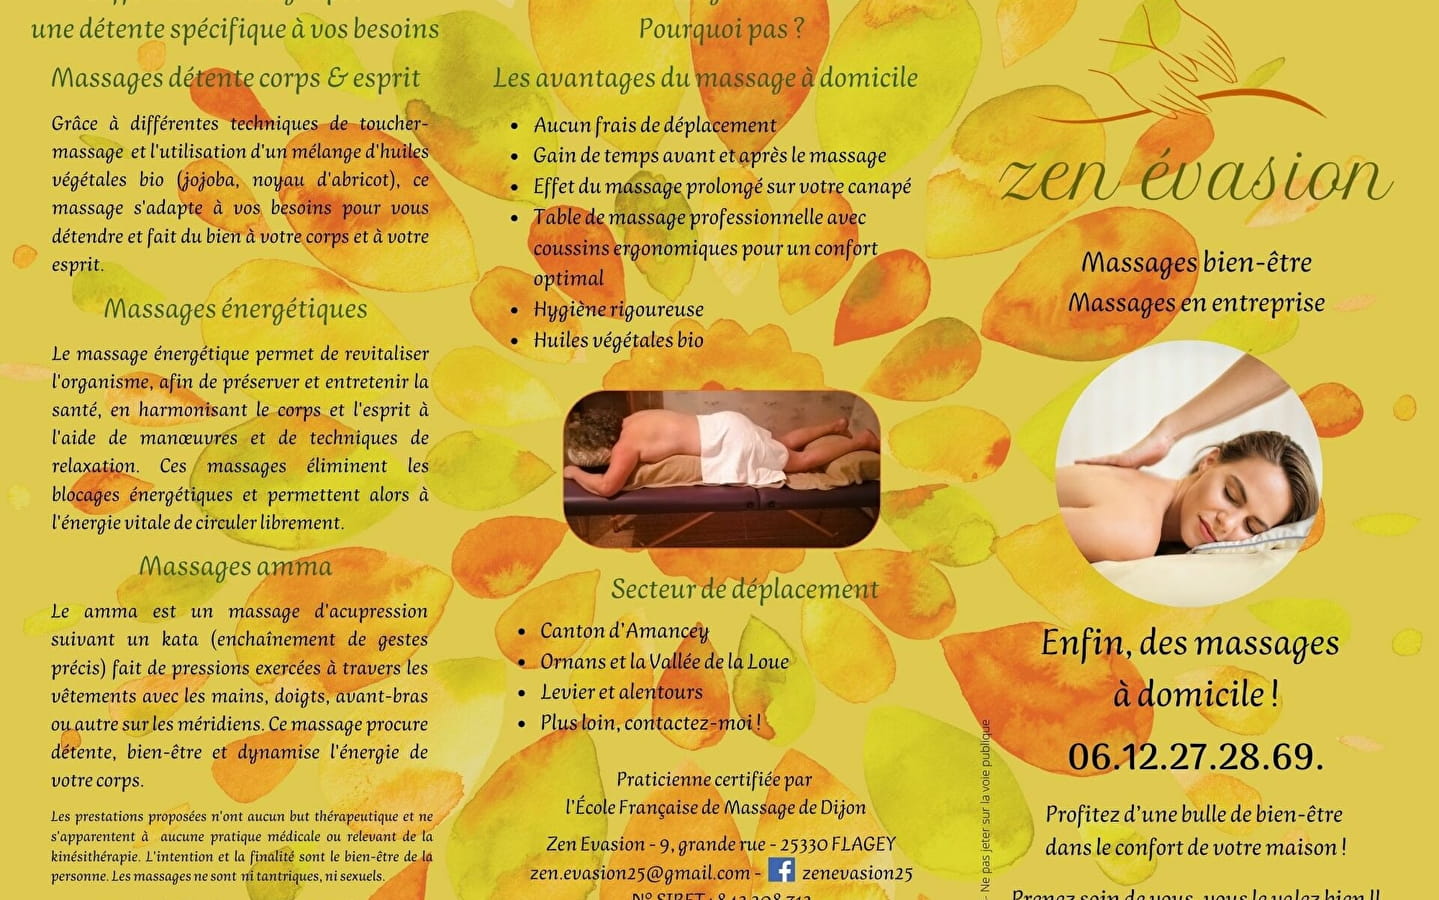 Zen Évasion - Massages bien-être à domicile